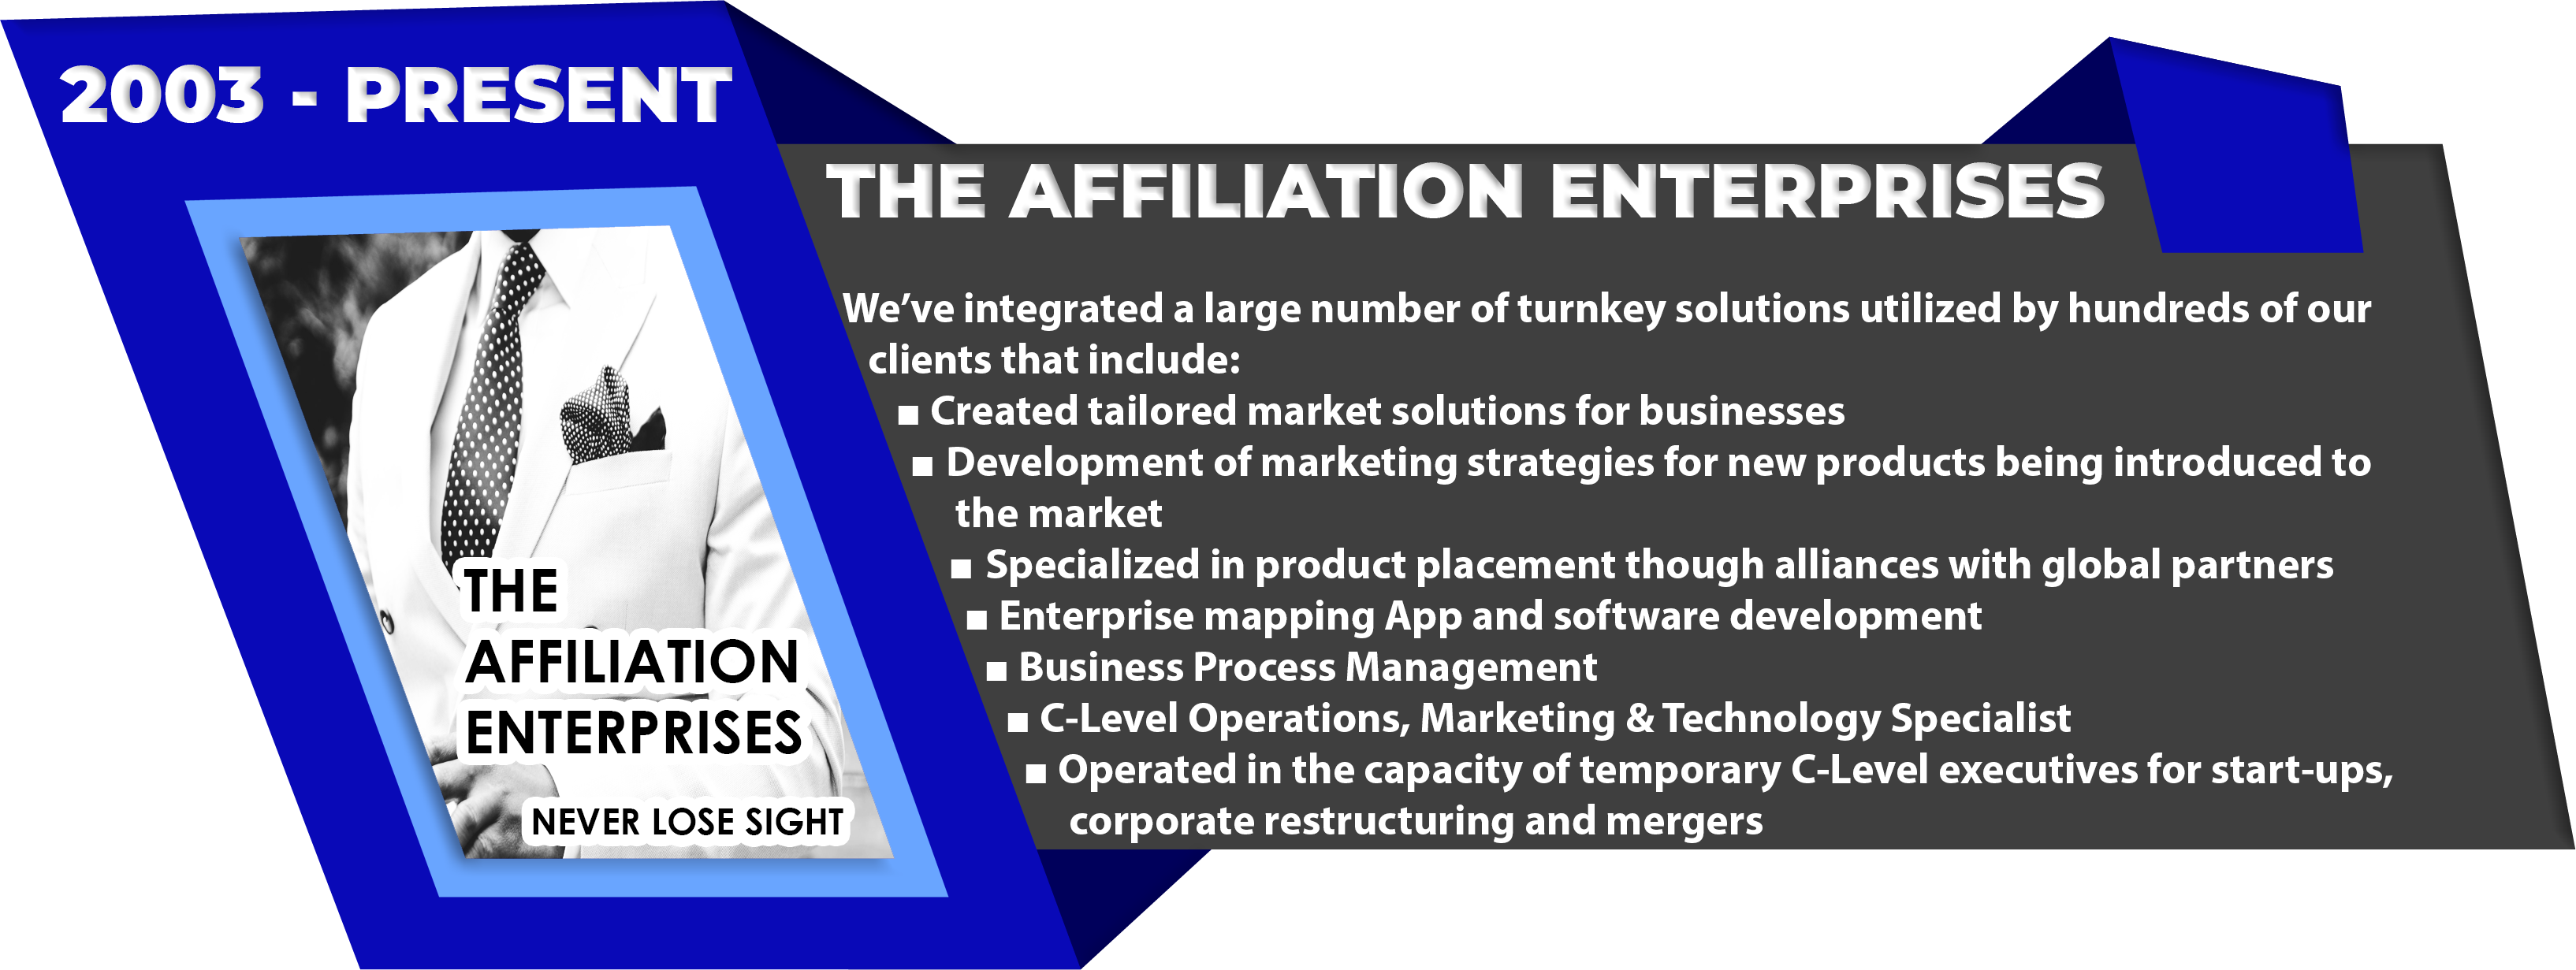 The-Affiliation-Enterprises-2003-Present-1